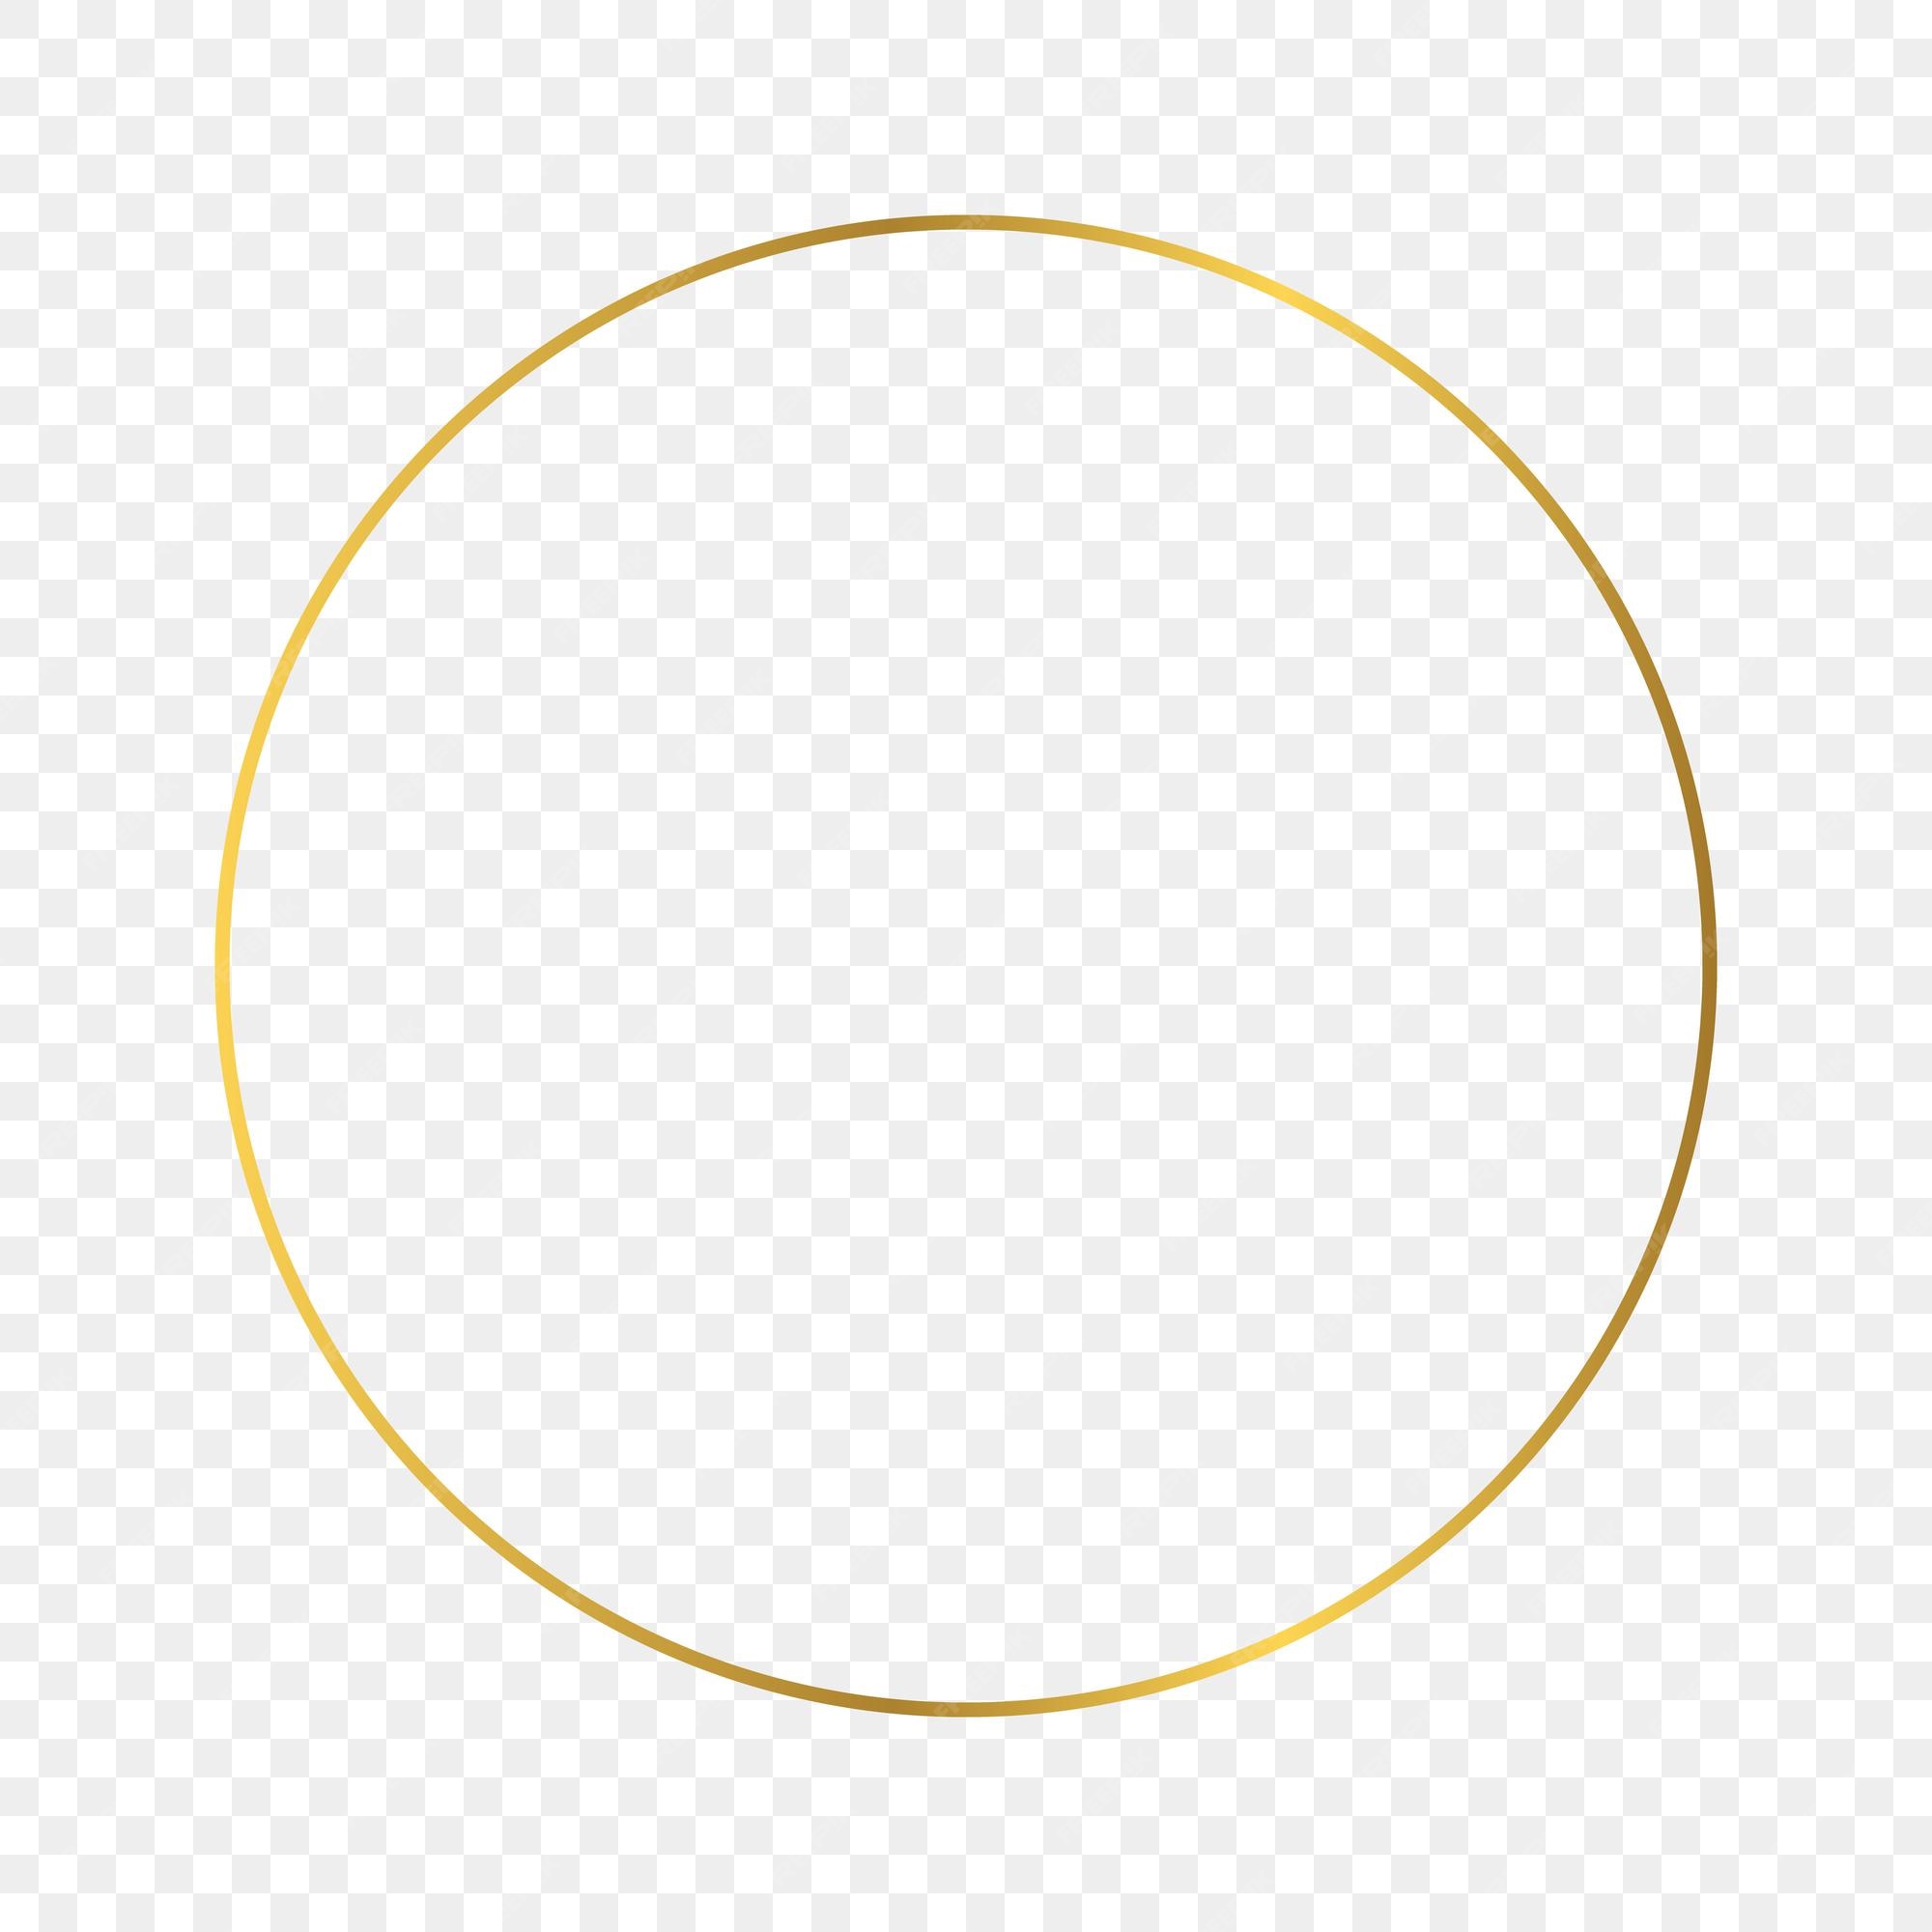 Hãy nhấp chuột để xem một tác phẩm nghệ thuật đầy phong cách với khung hình vòng vàng bóng trên nền trong suốt. Đây là chiếc khung hình vô cùng độc đáo với sự kết hợp hoàn hảo giữa màu và độ trong suốt tạo nên một không gian dành cho các bạn yêu thích sự tinh tế!